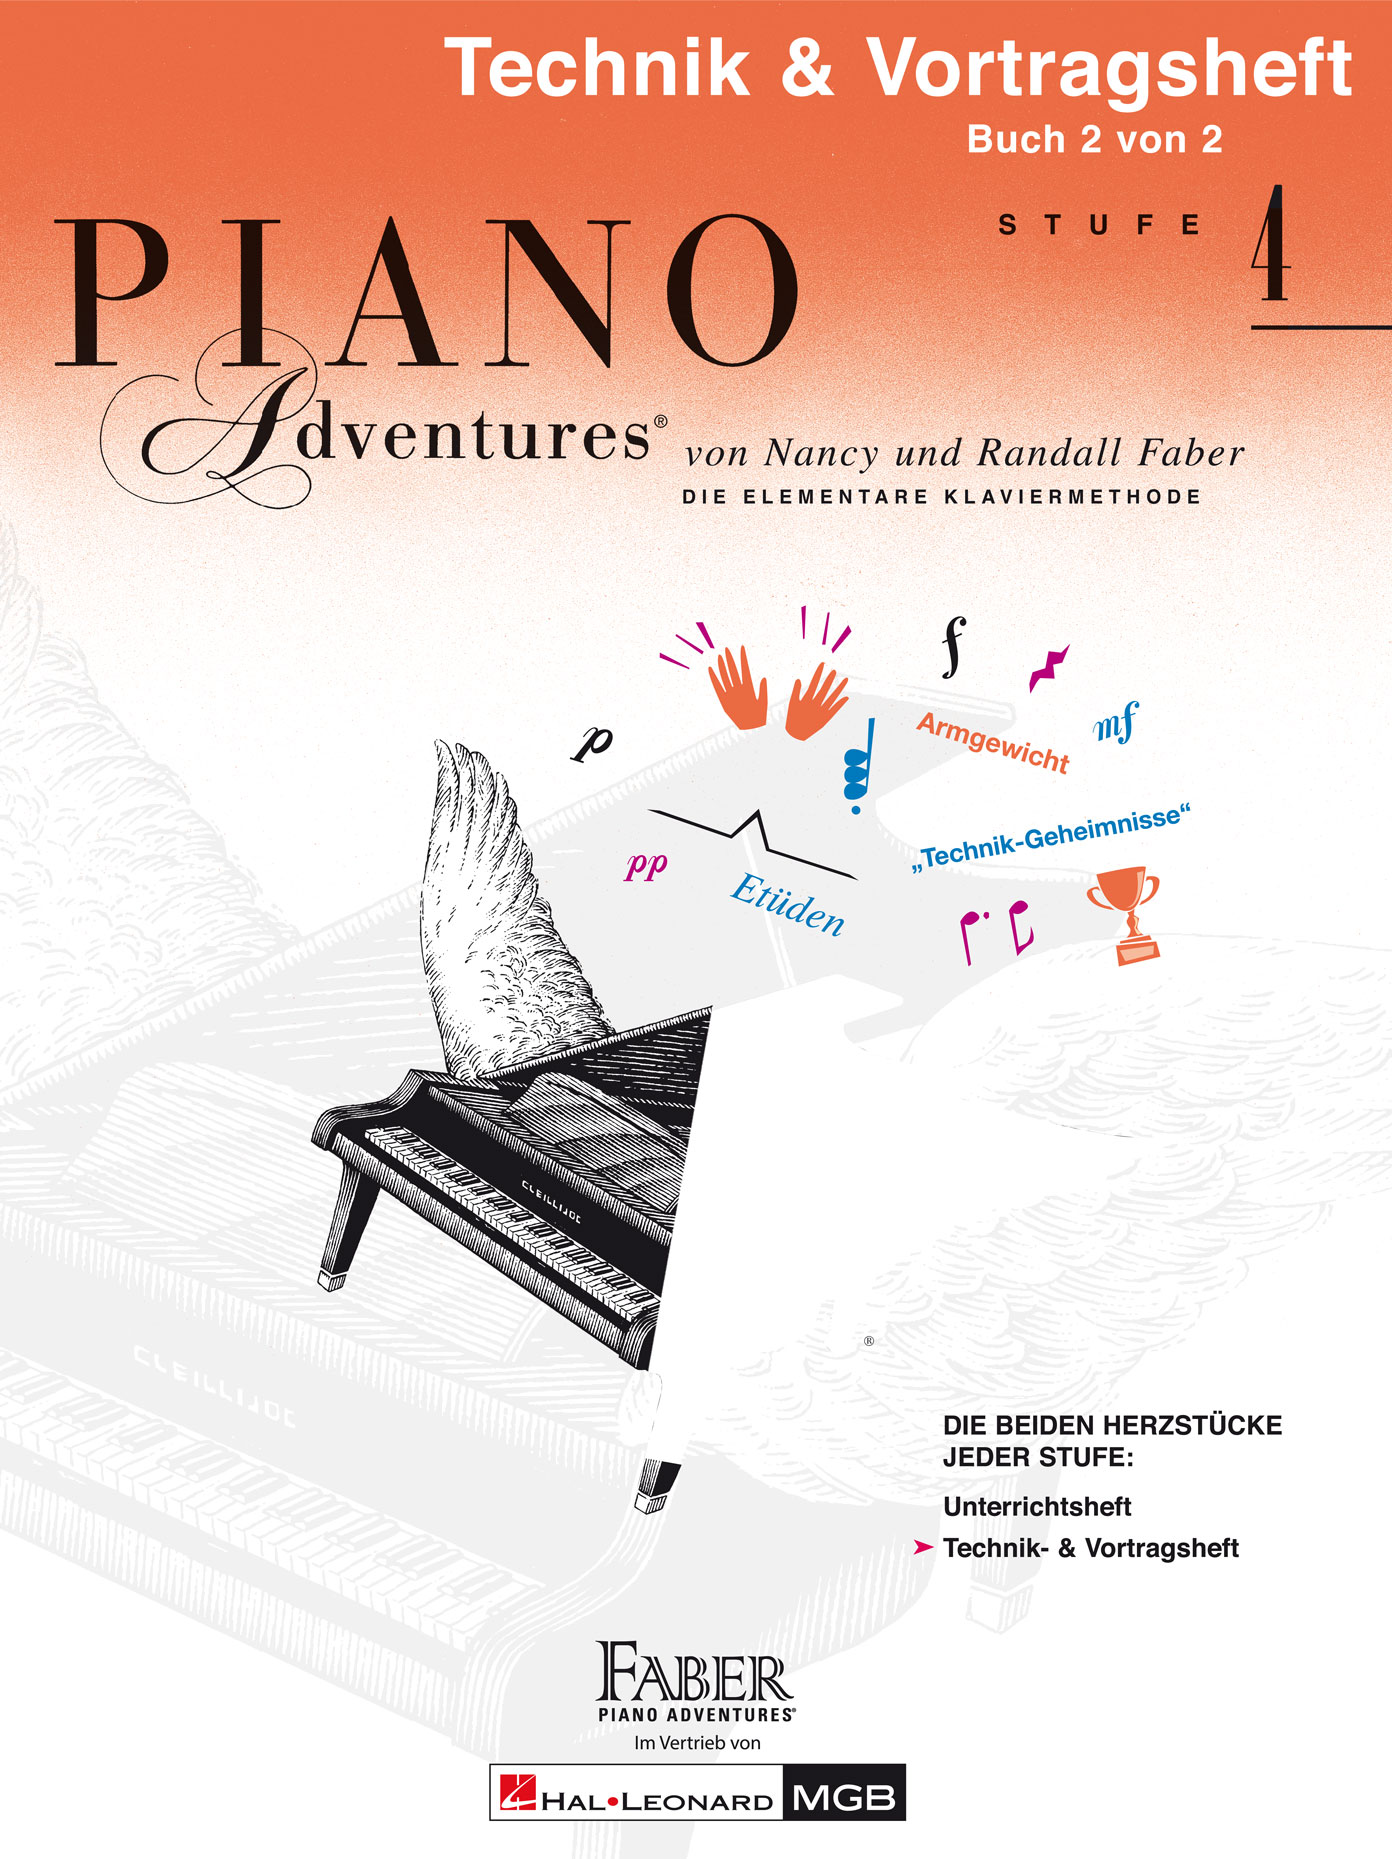 Piano Adventures: Technik- & Vortragsheft 4 - Buch 2 von 2